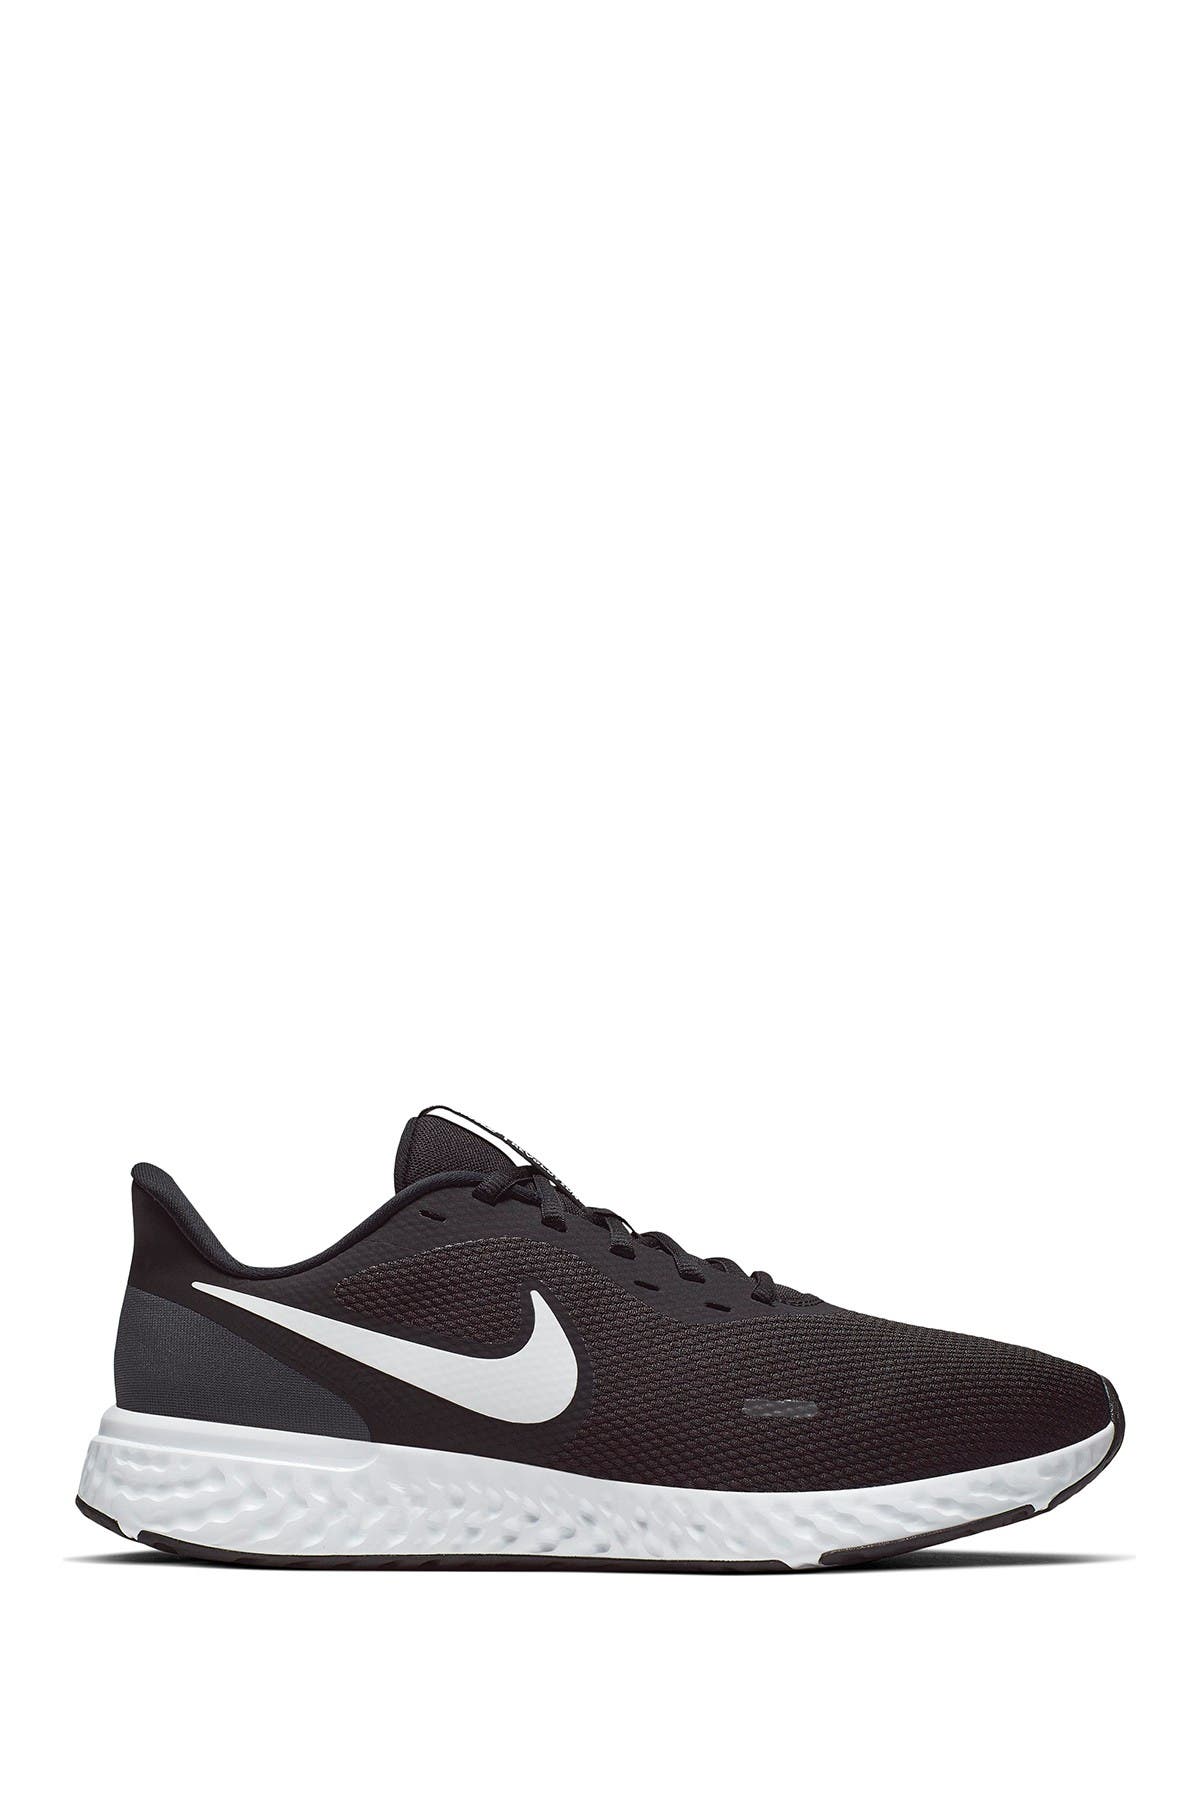 Nike | Revolution 5 4E Running Sneaker 